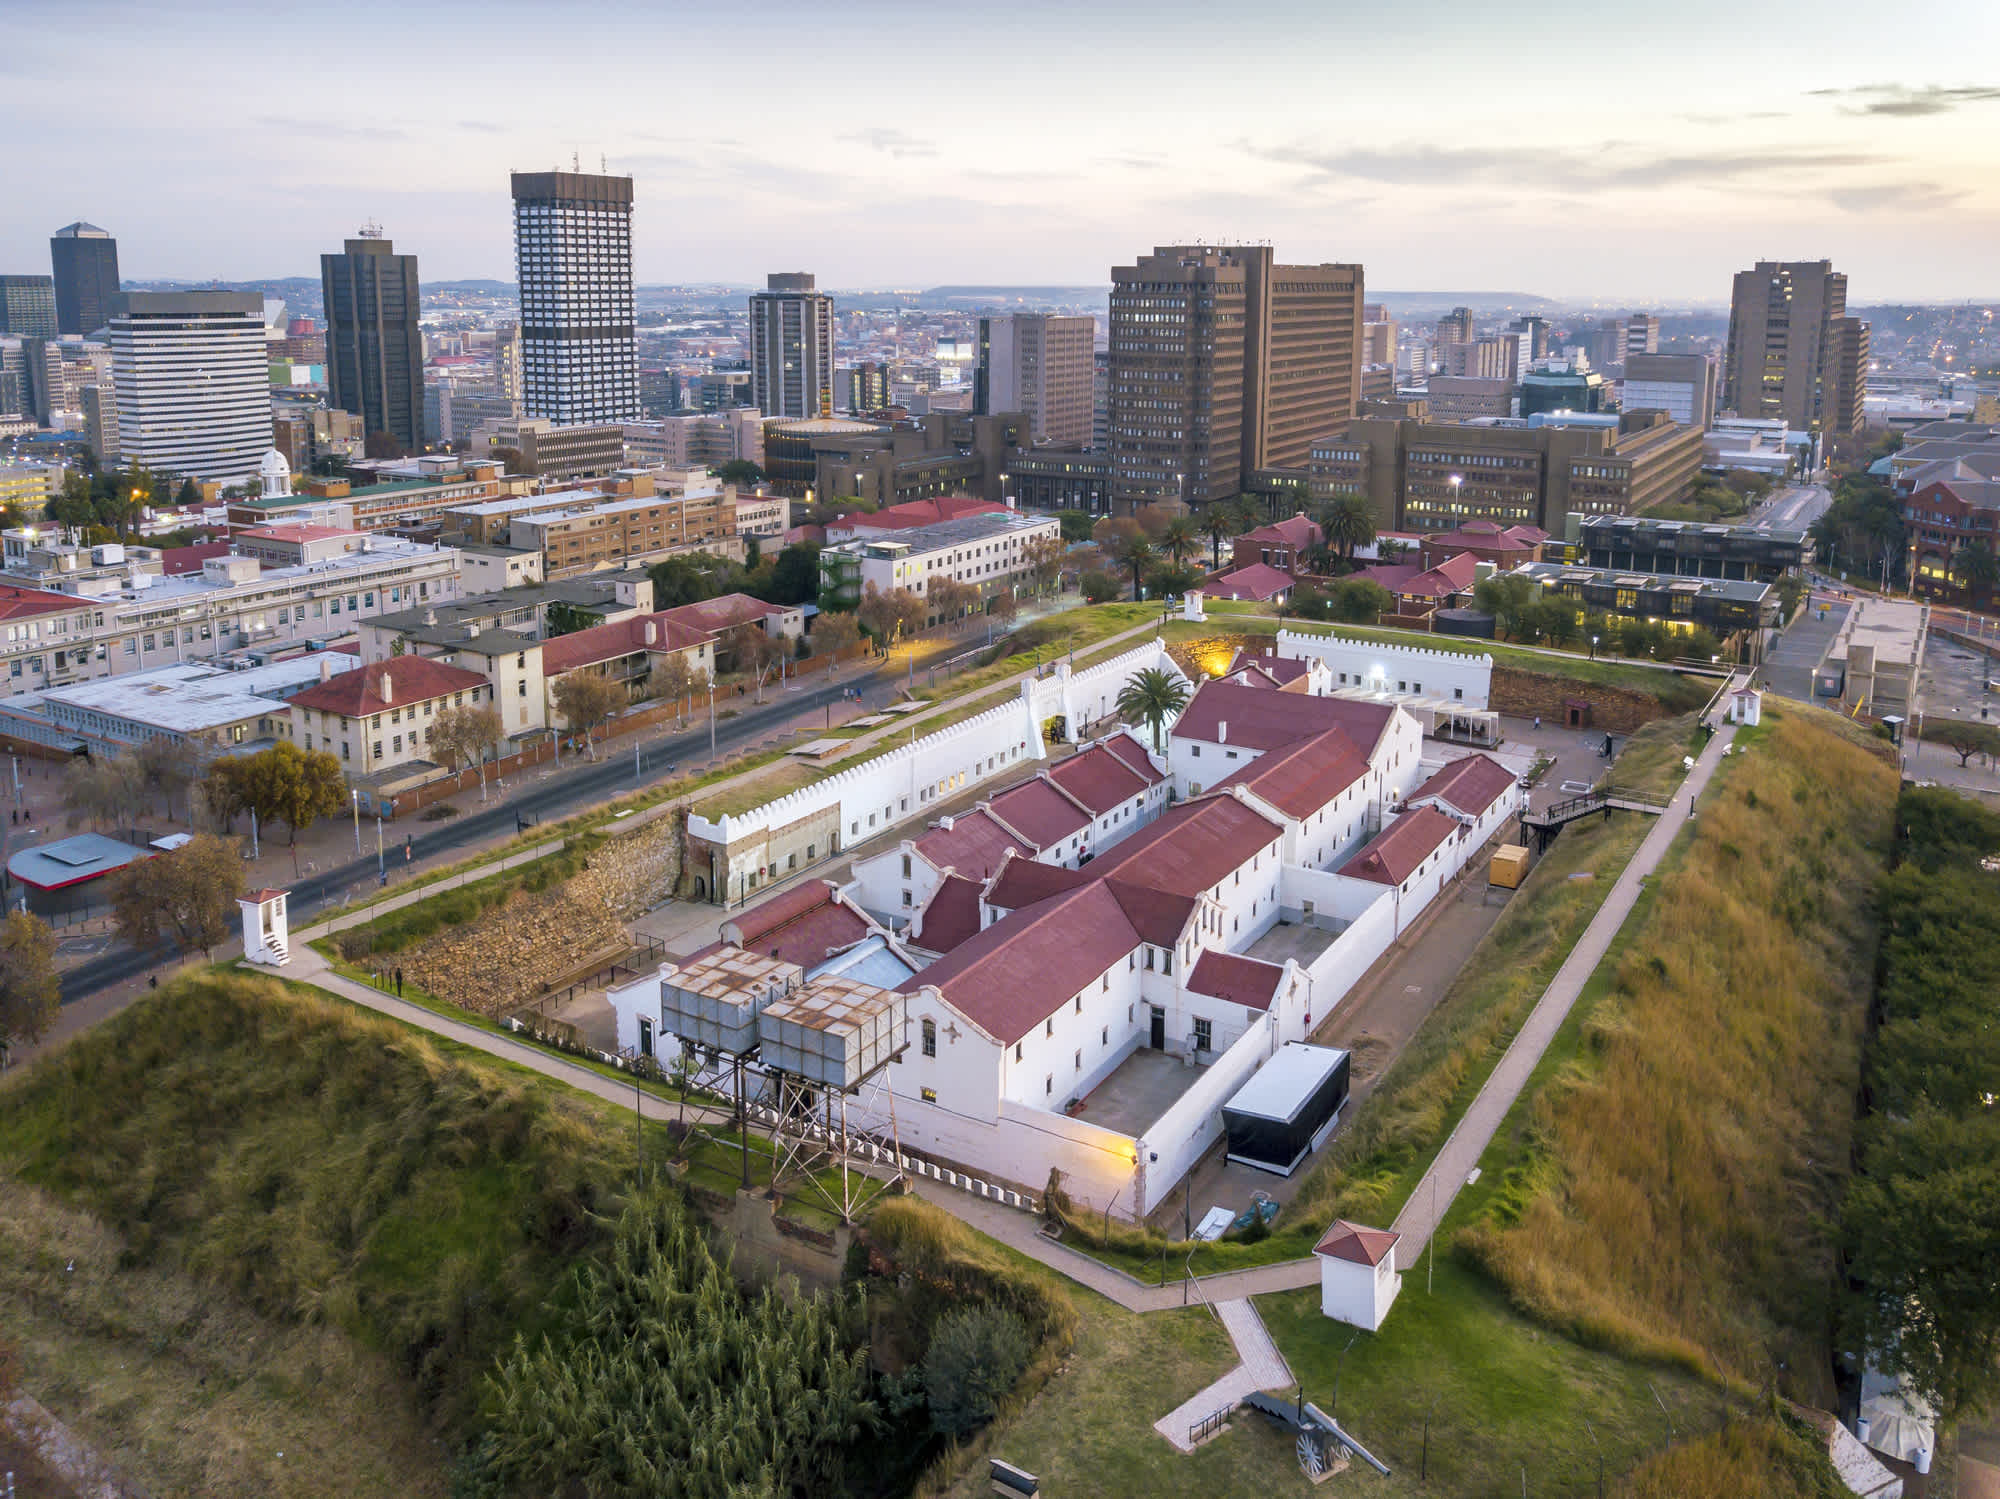 Geschichtsträchtiger Ort, an dem sich Vergangenheit und Zukunft von Johannesburg verbinden.